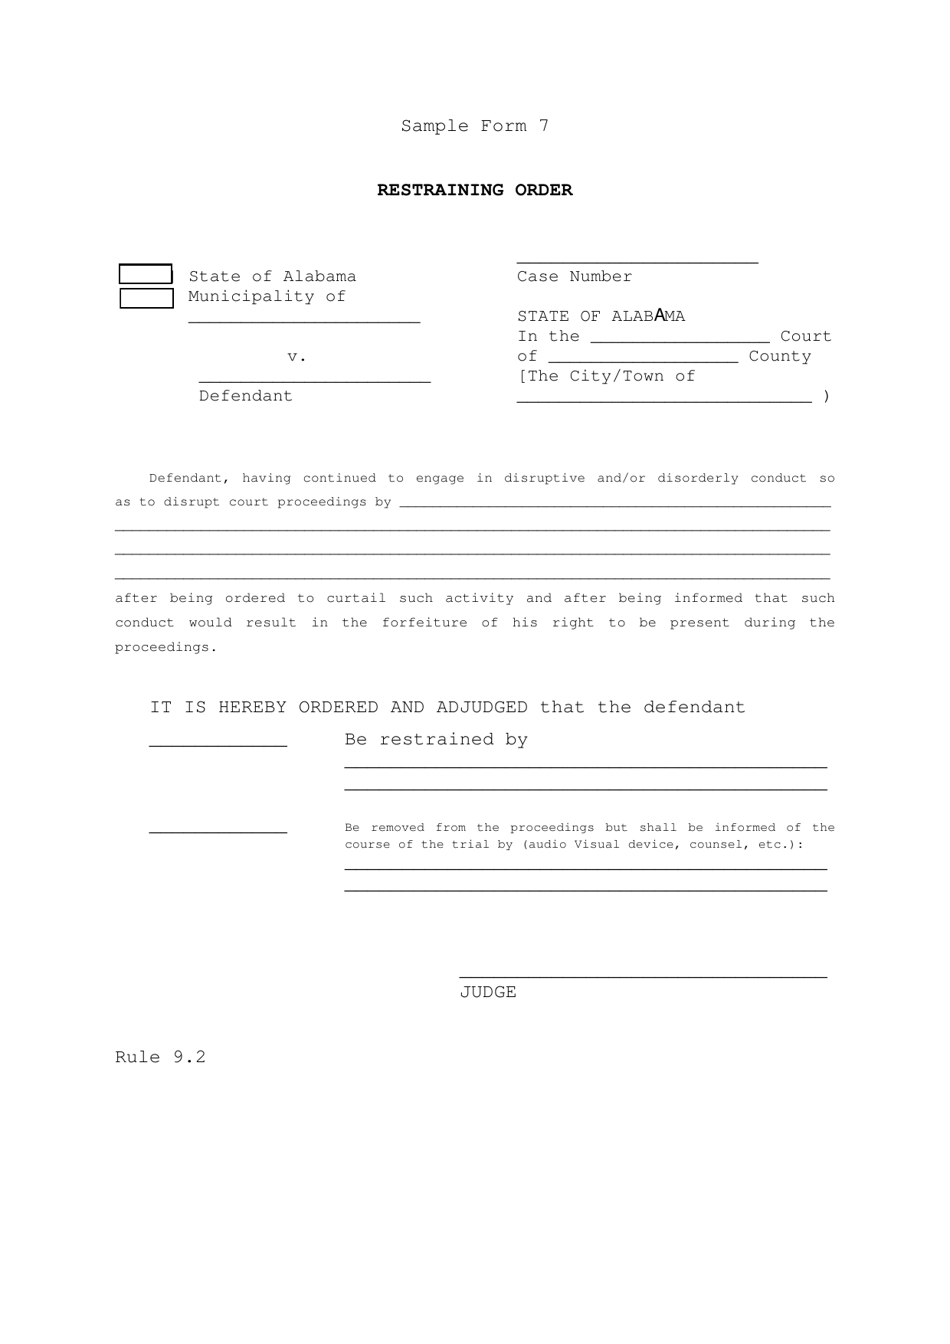 Sample Form 7 Restraining Order - Alabama, Page 1